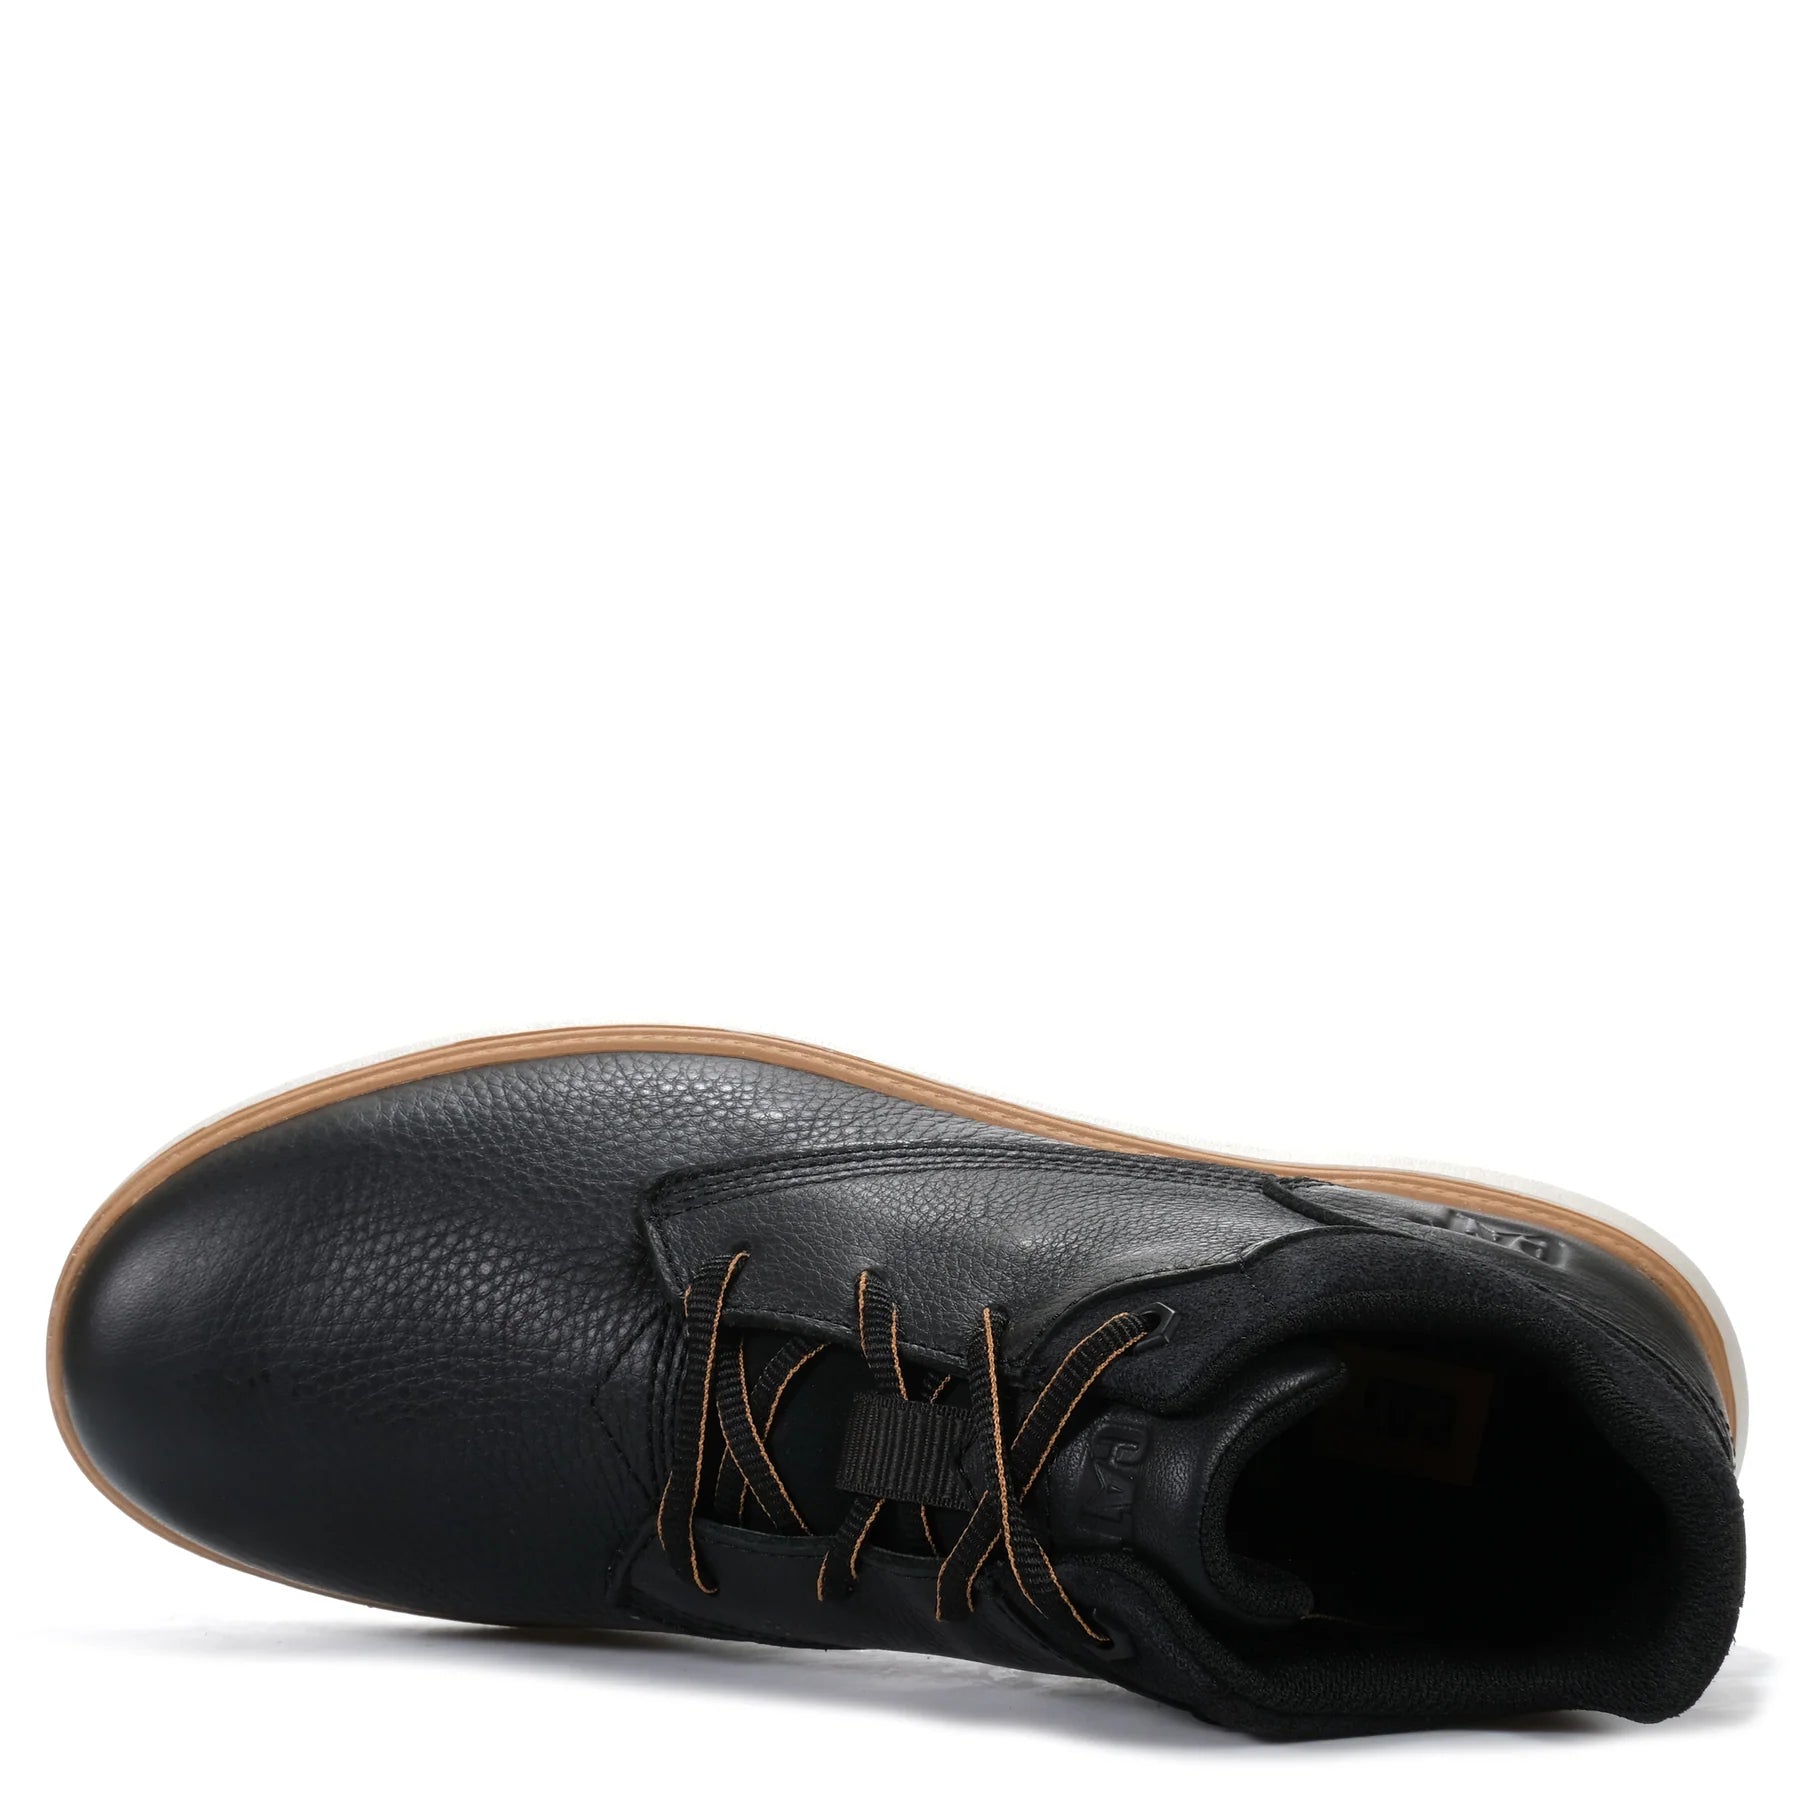 Roamer Mid 2.0 - shoe&amp;me - Caterpillar - Boot - Boots, Mens, Winter